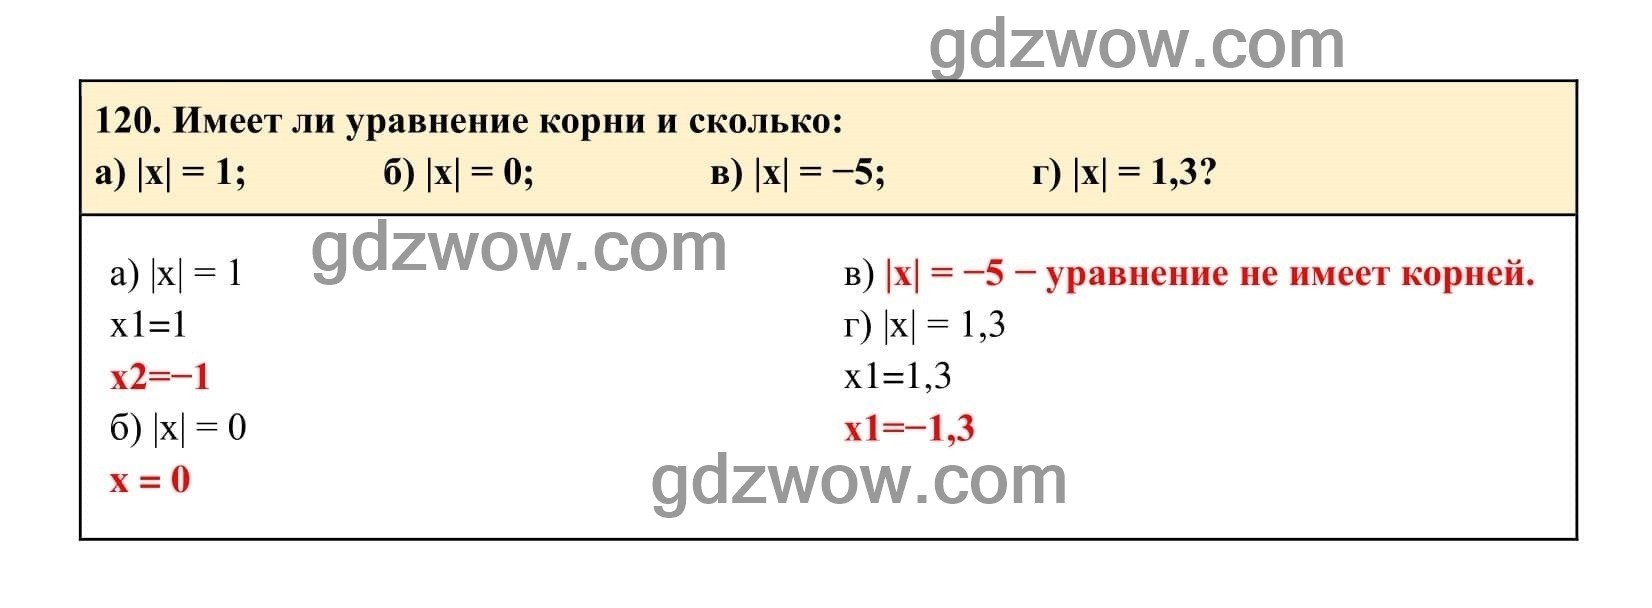 Упражнение 120 - ГДЗ по Алгебре 7 класс Учебник Макарычев (решебник) - GDZwow